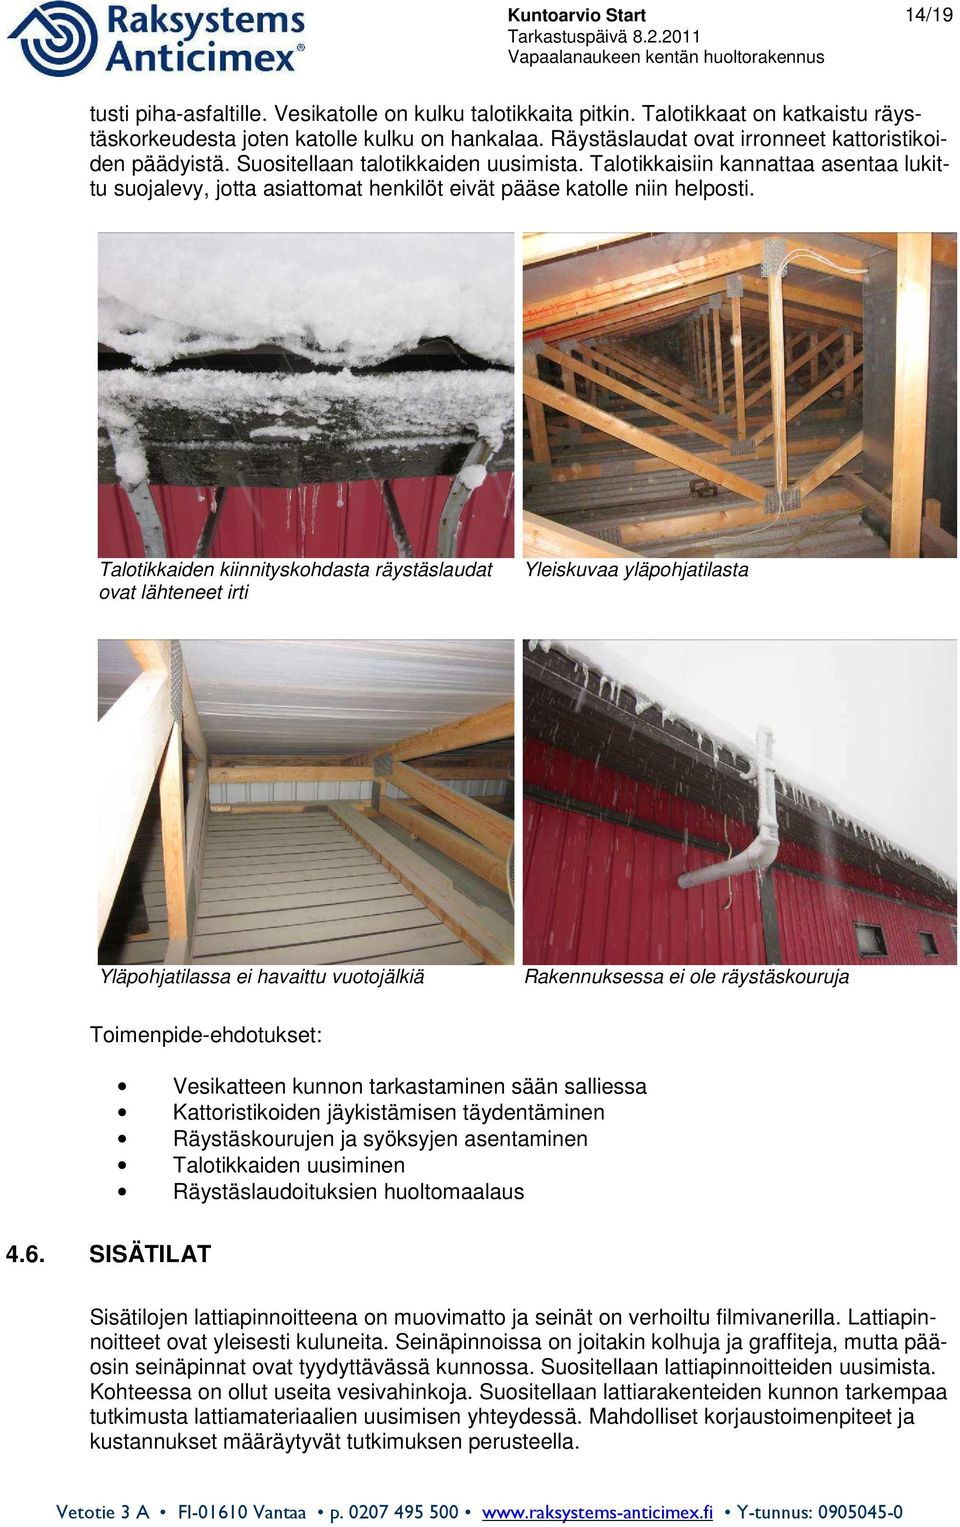 Talotikkaisiin kannattaa asentaa lukittu suojalevy, jotta asiattomat henkilöt eivät pääse katolle niin helposti.